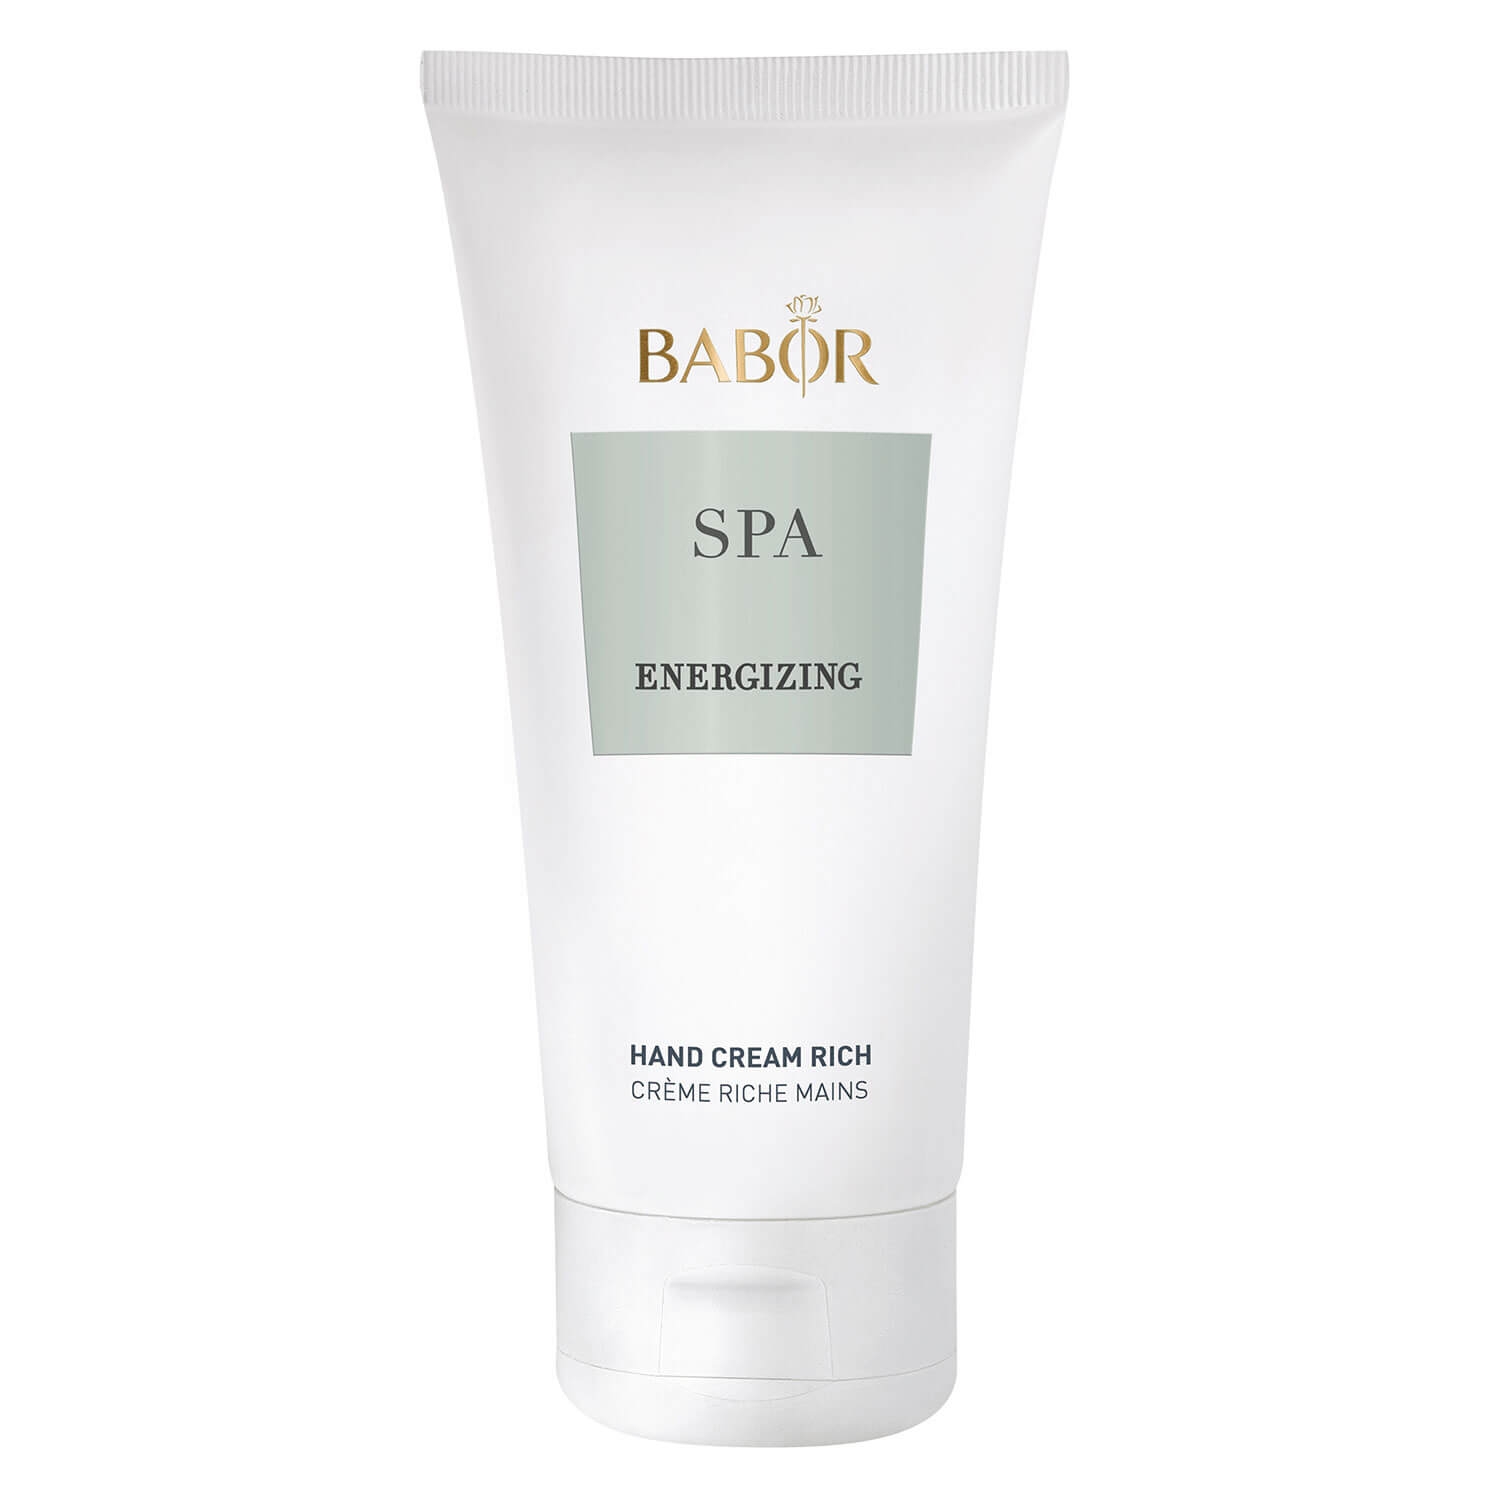 Produktbild von BABOR SPA - Energizing Energizing Hand Cream Rich